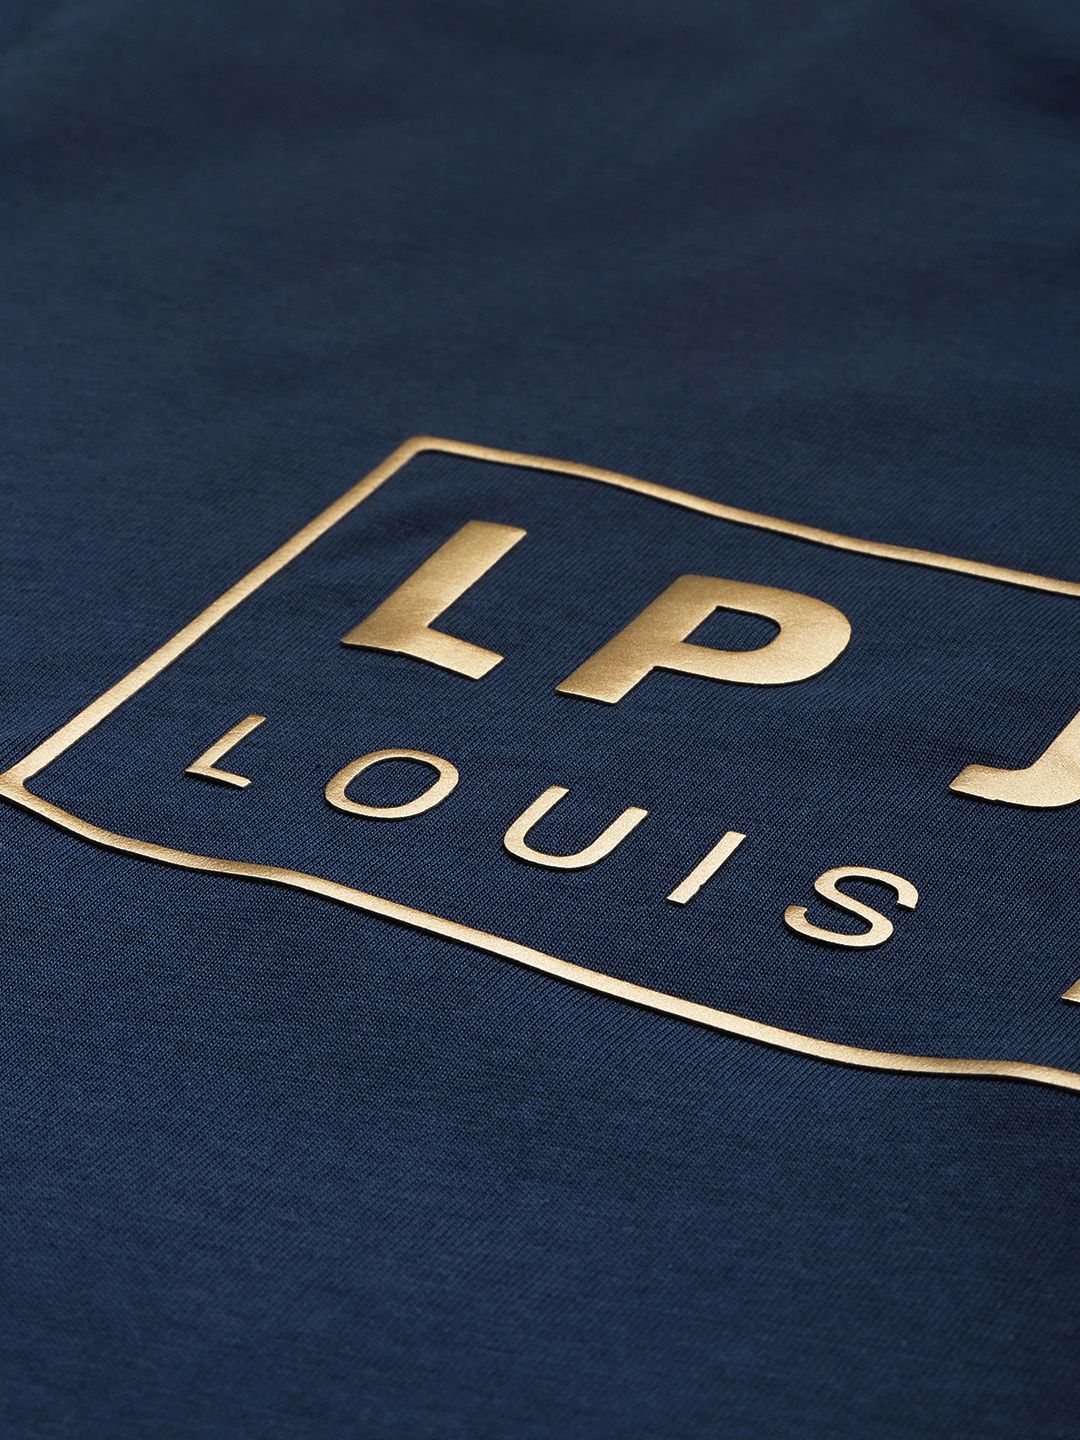 Louis Philippe Jeans Brand Logo Pure Cotton Applique Slim Fit T-shirt